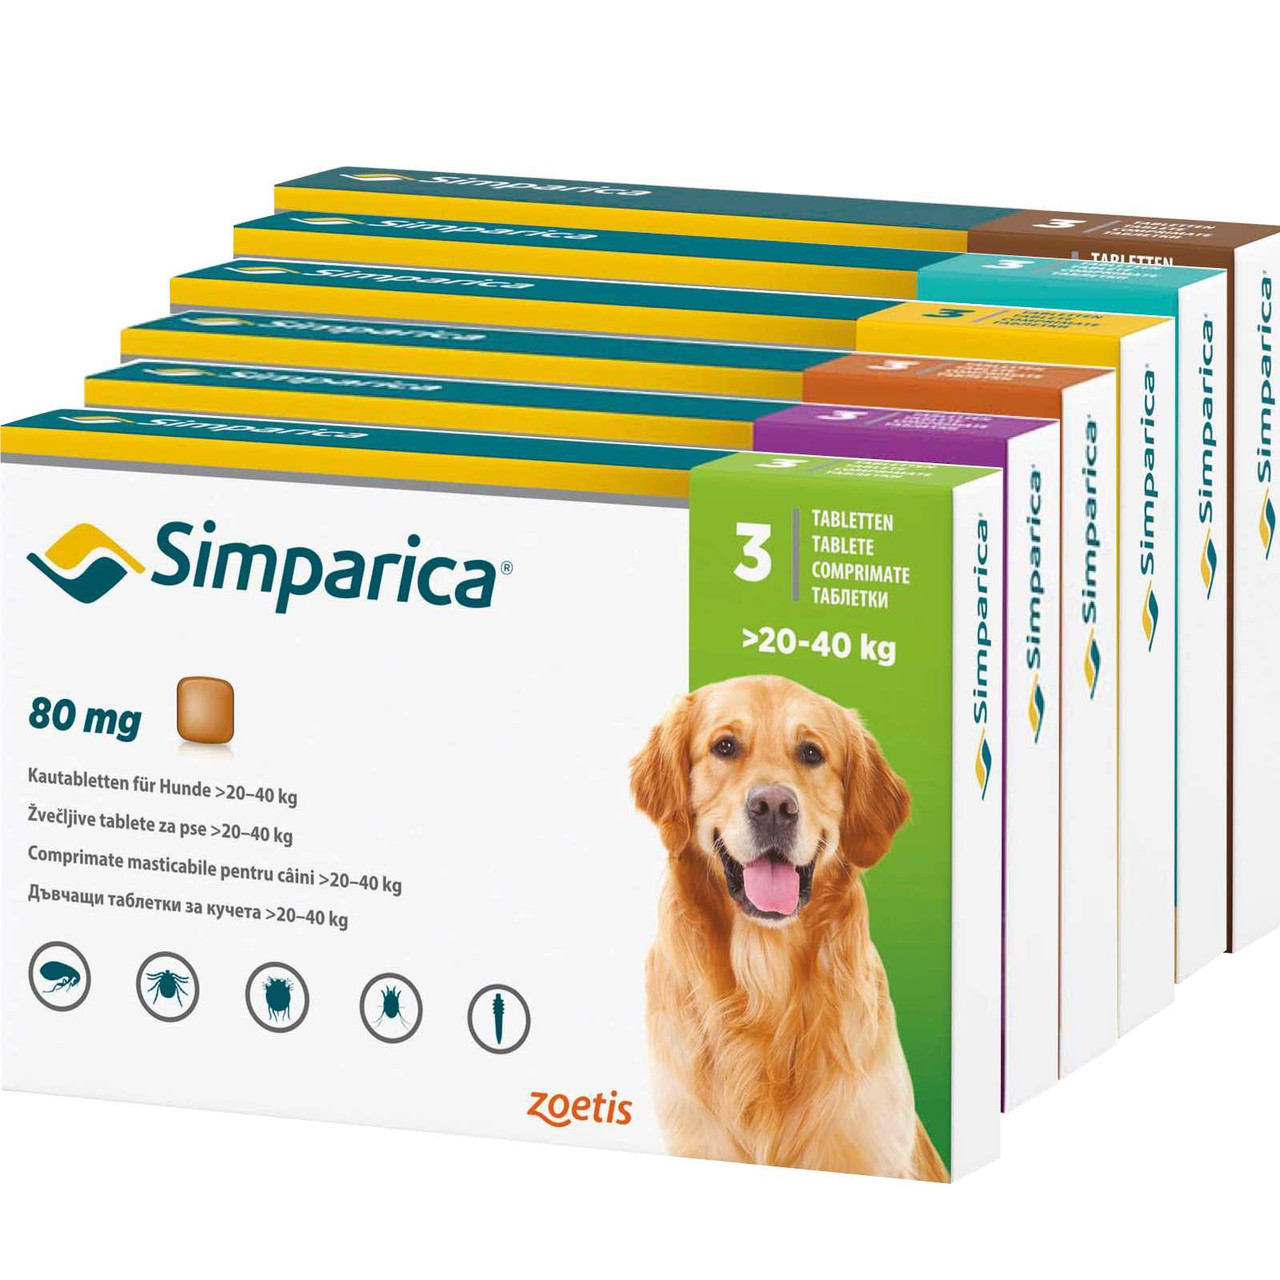 20% de descuento en Simparica Tabletas masticables contra pulgas y garrapatas para perros en Atlantic Pet Products